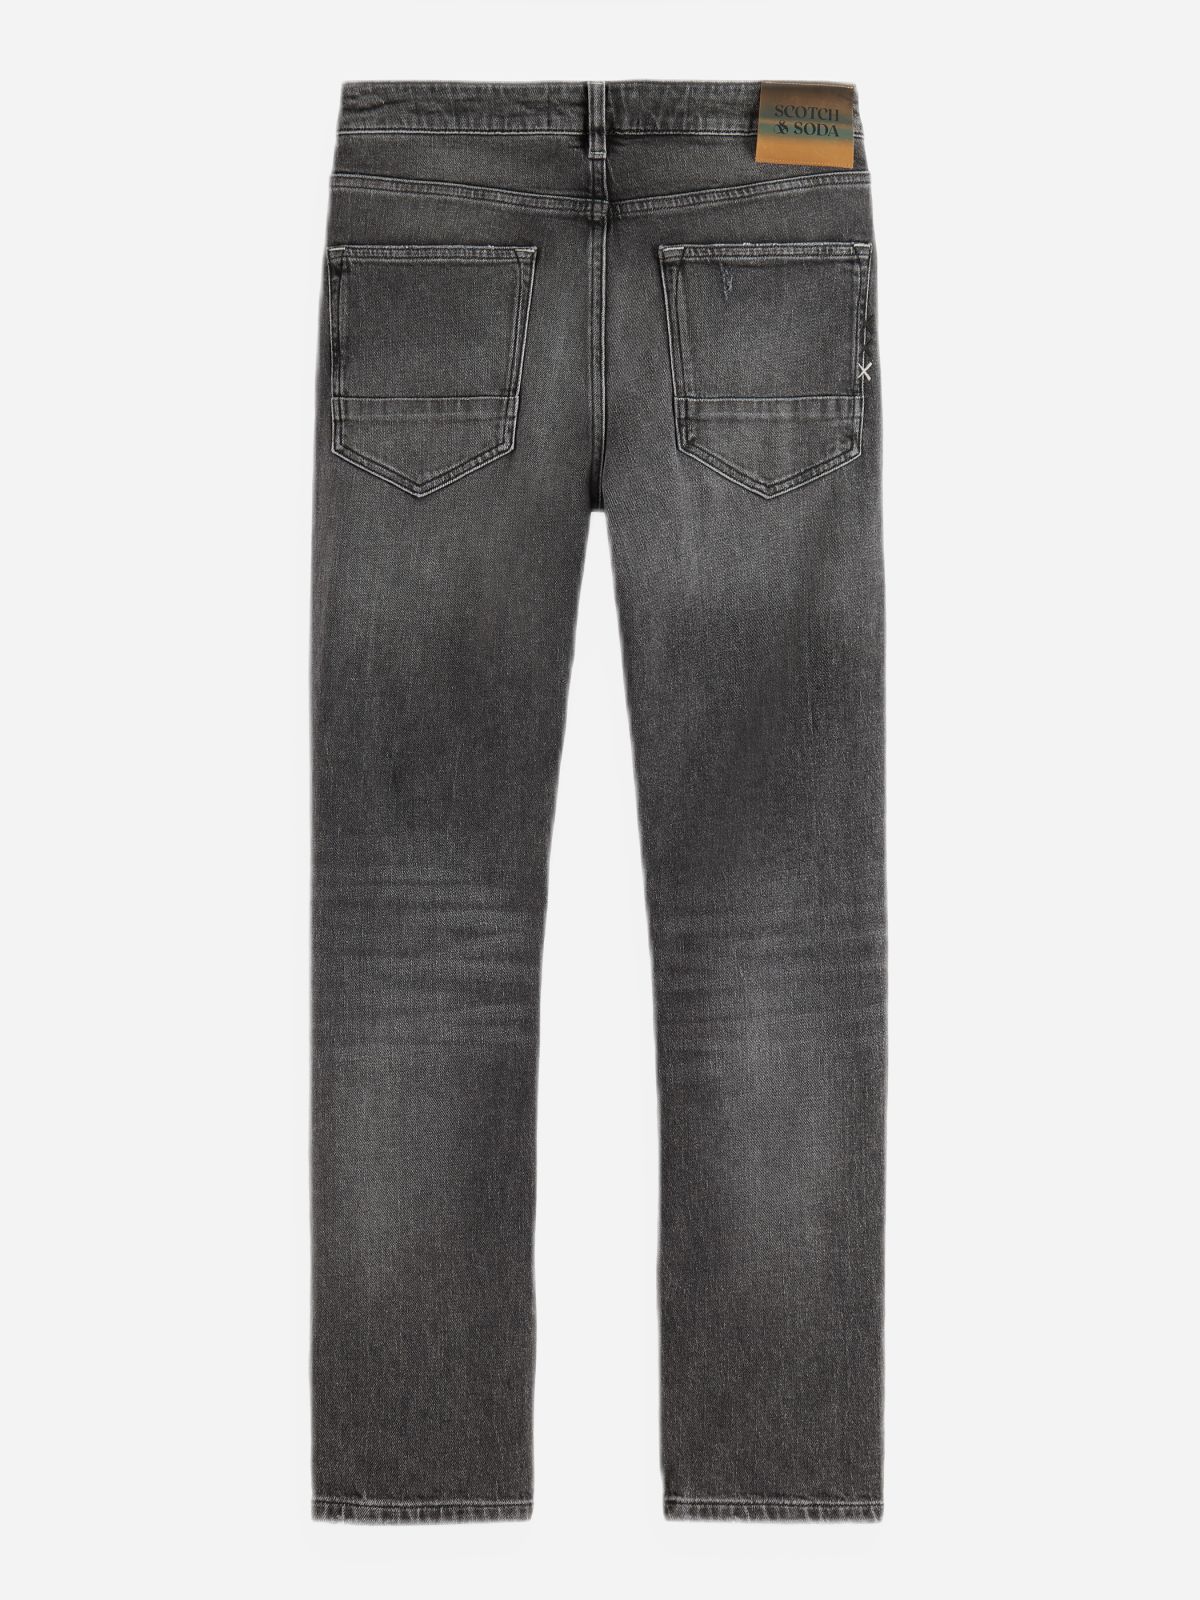  מכנסי סקיני ג'ינס של SCOTCH & SODA